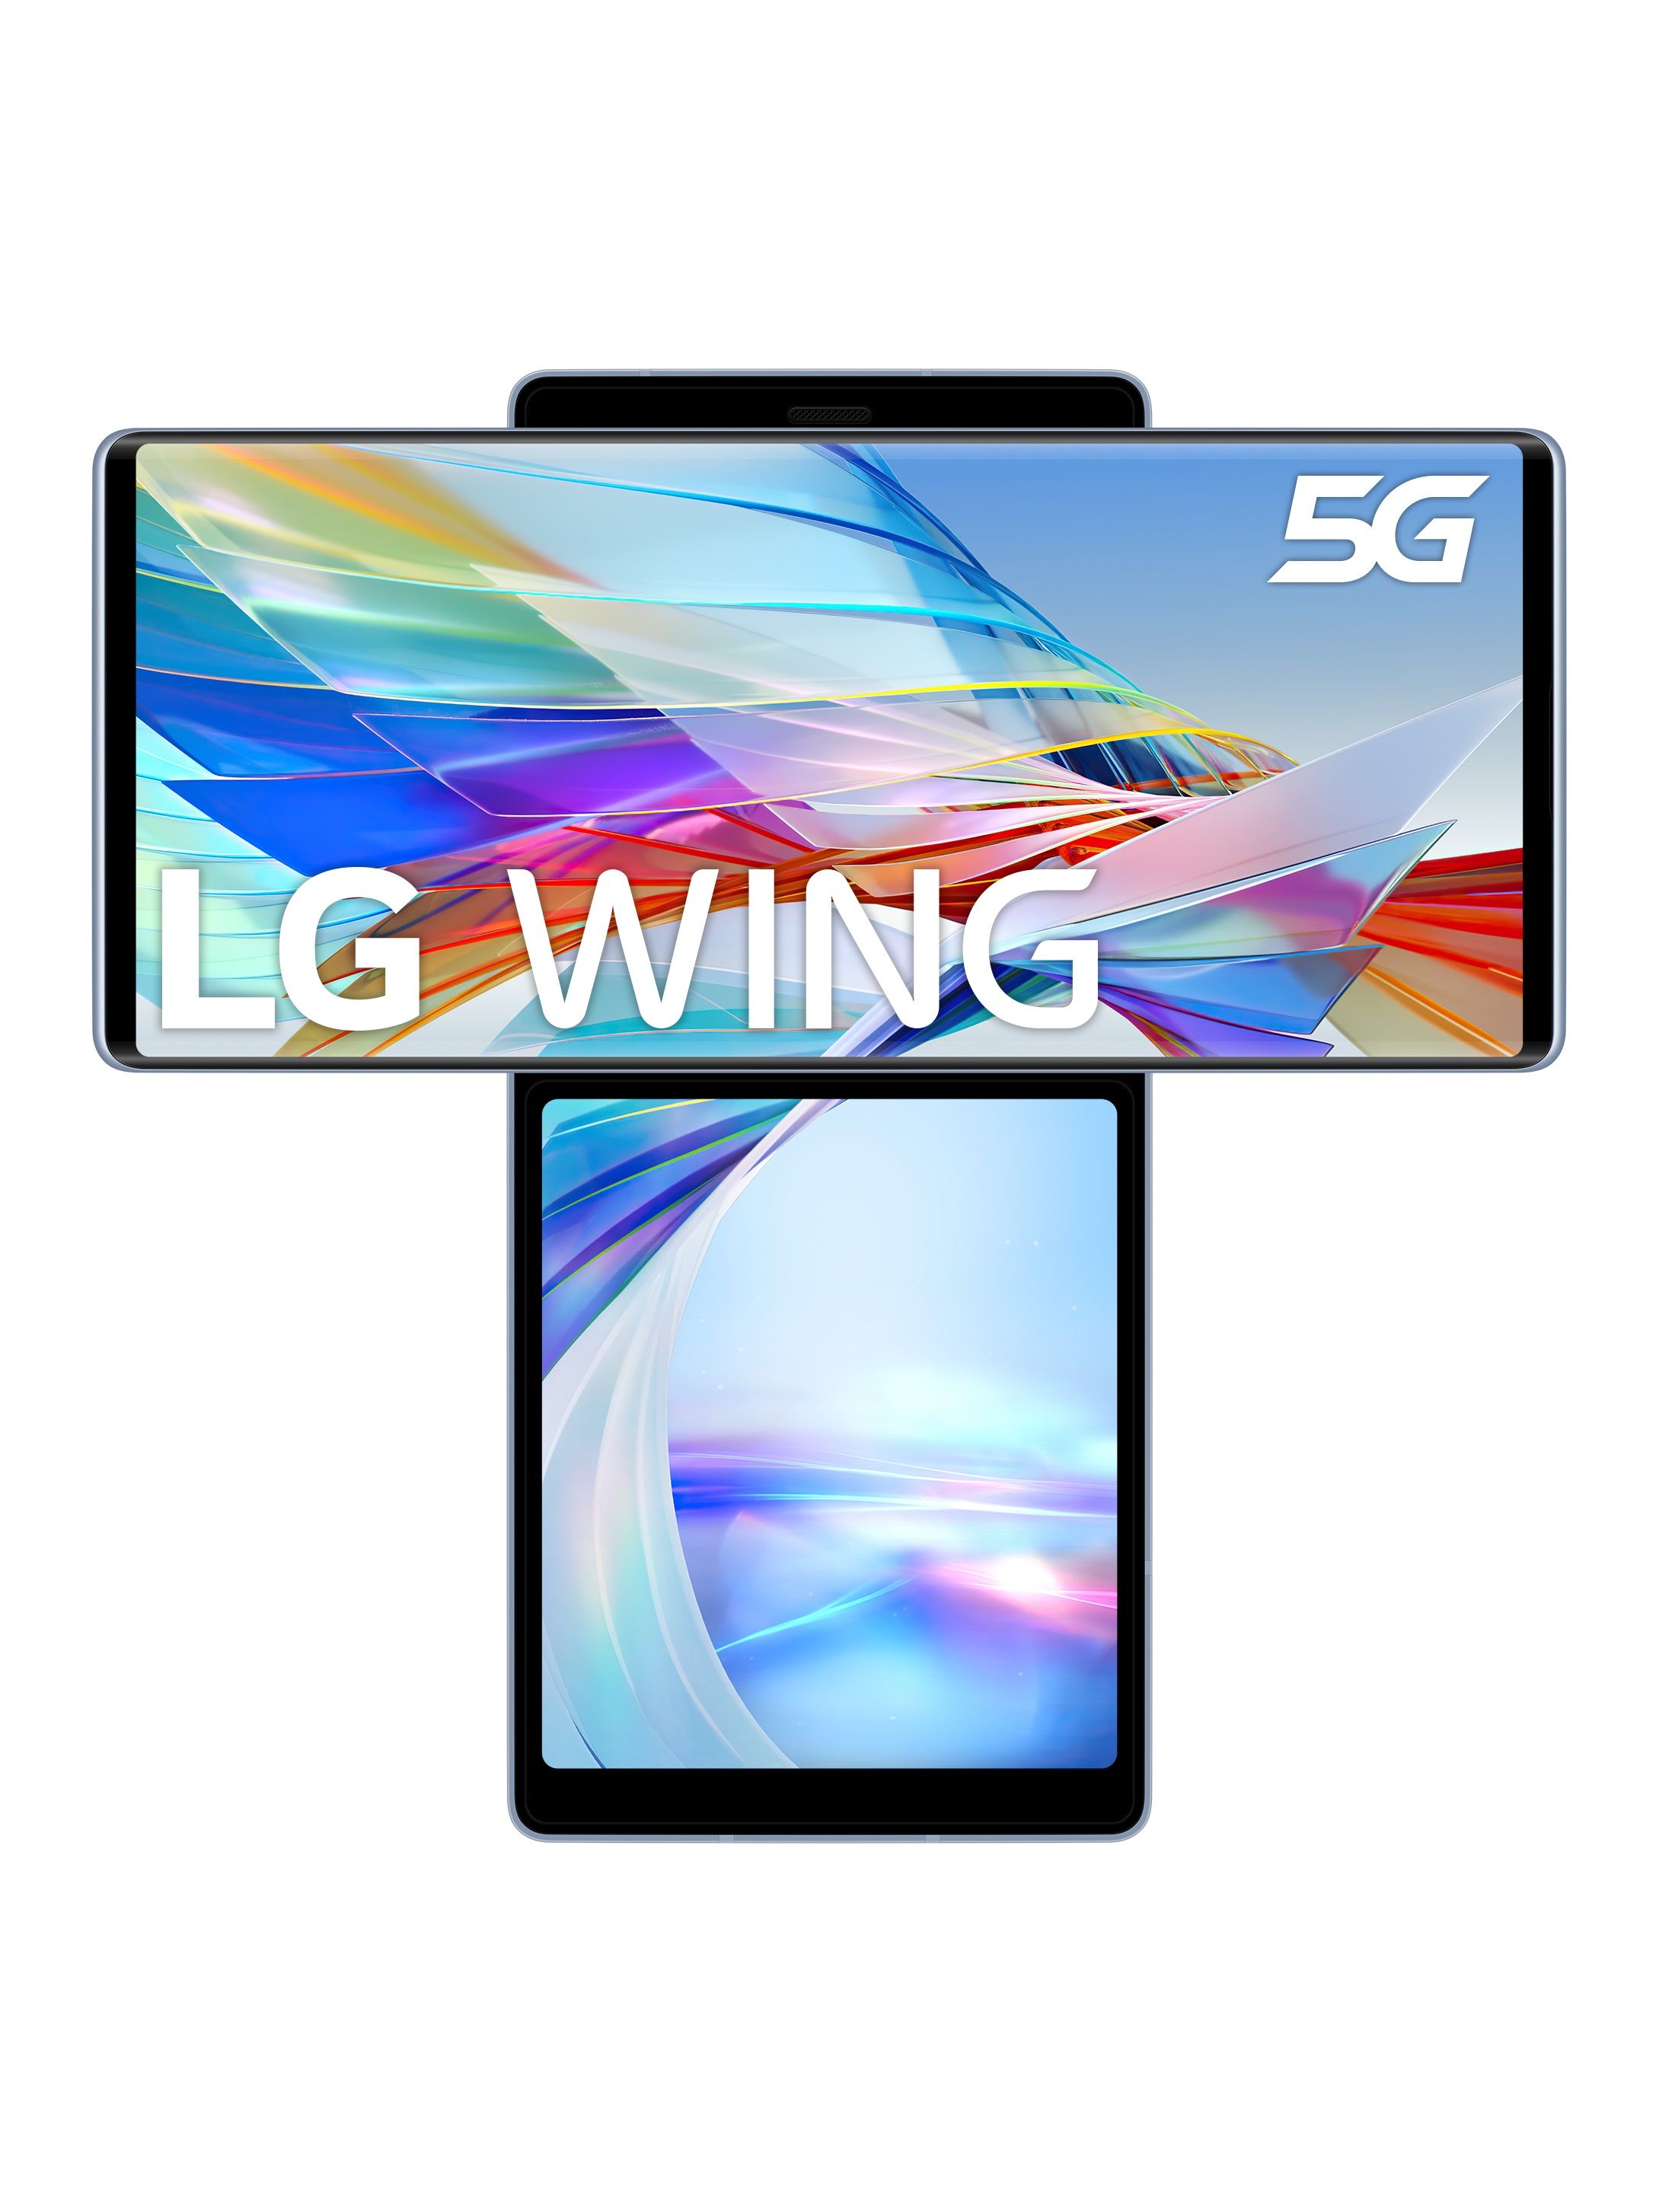 Probamos el LG Wing, el móvil más raro del mercado: tiene una